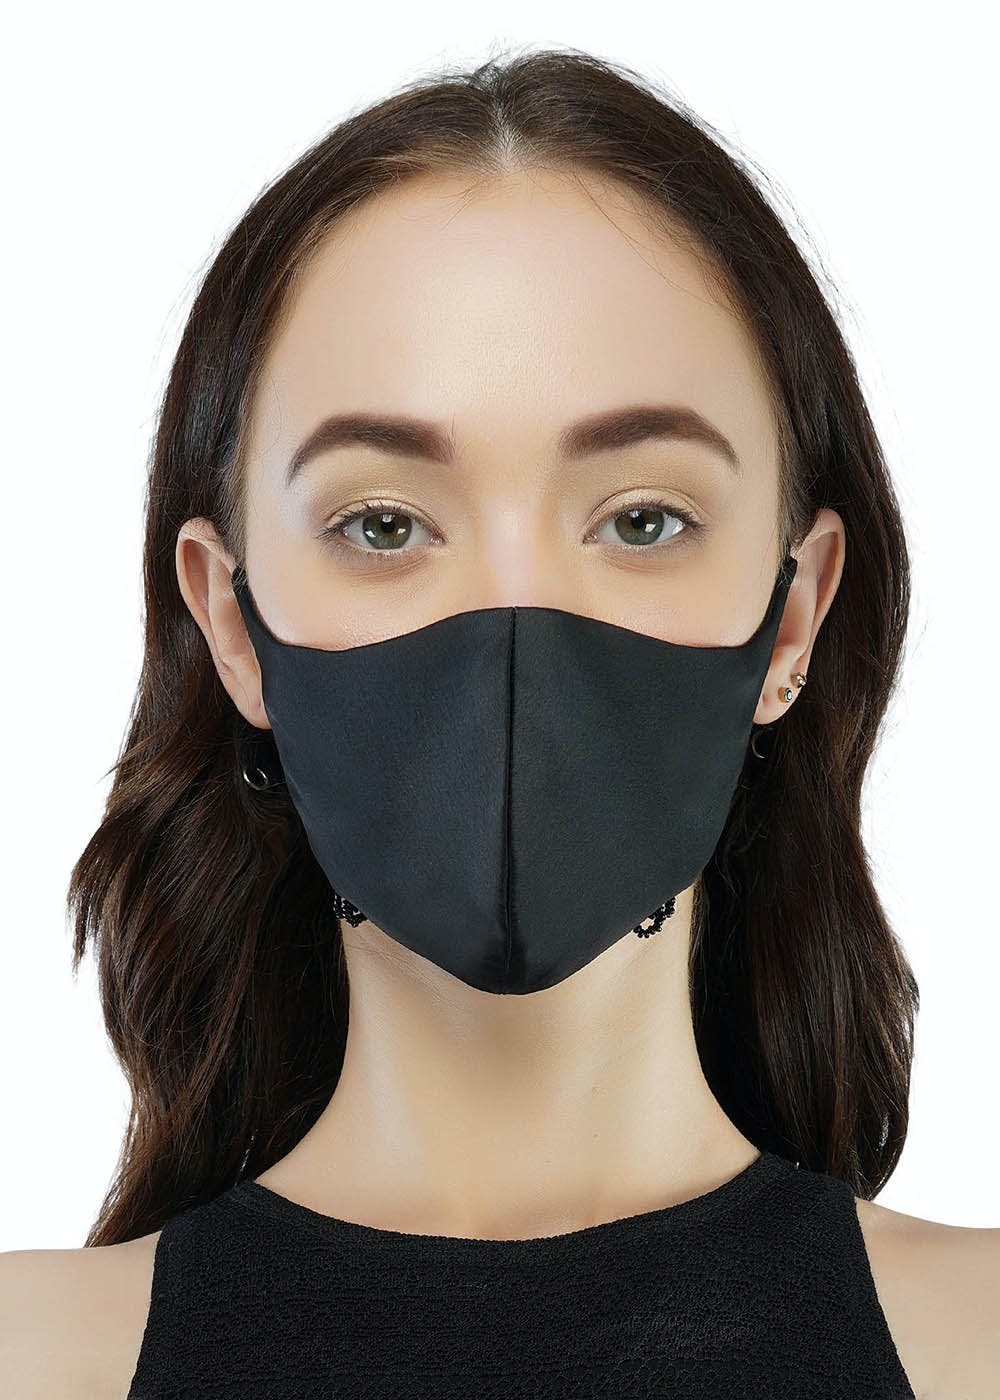 Get Adjustable Strap Contoured 3-Ply Mask at ₹ 490 | LBB Shop